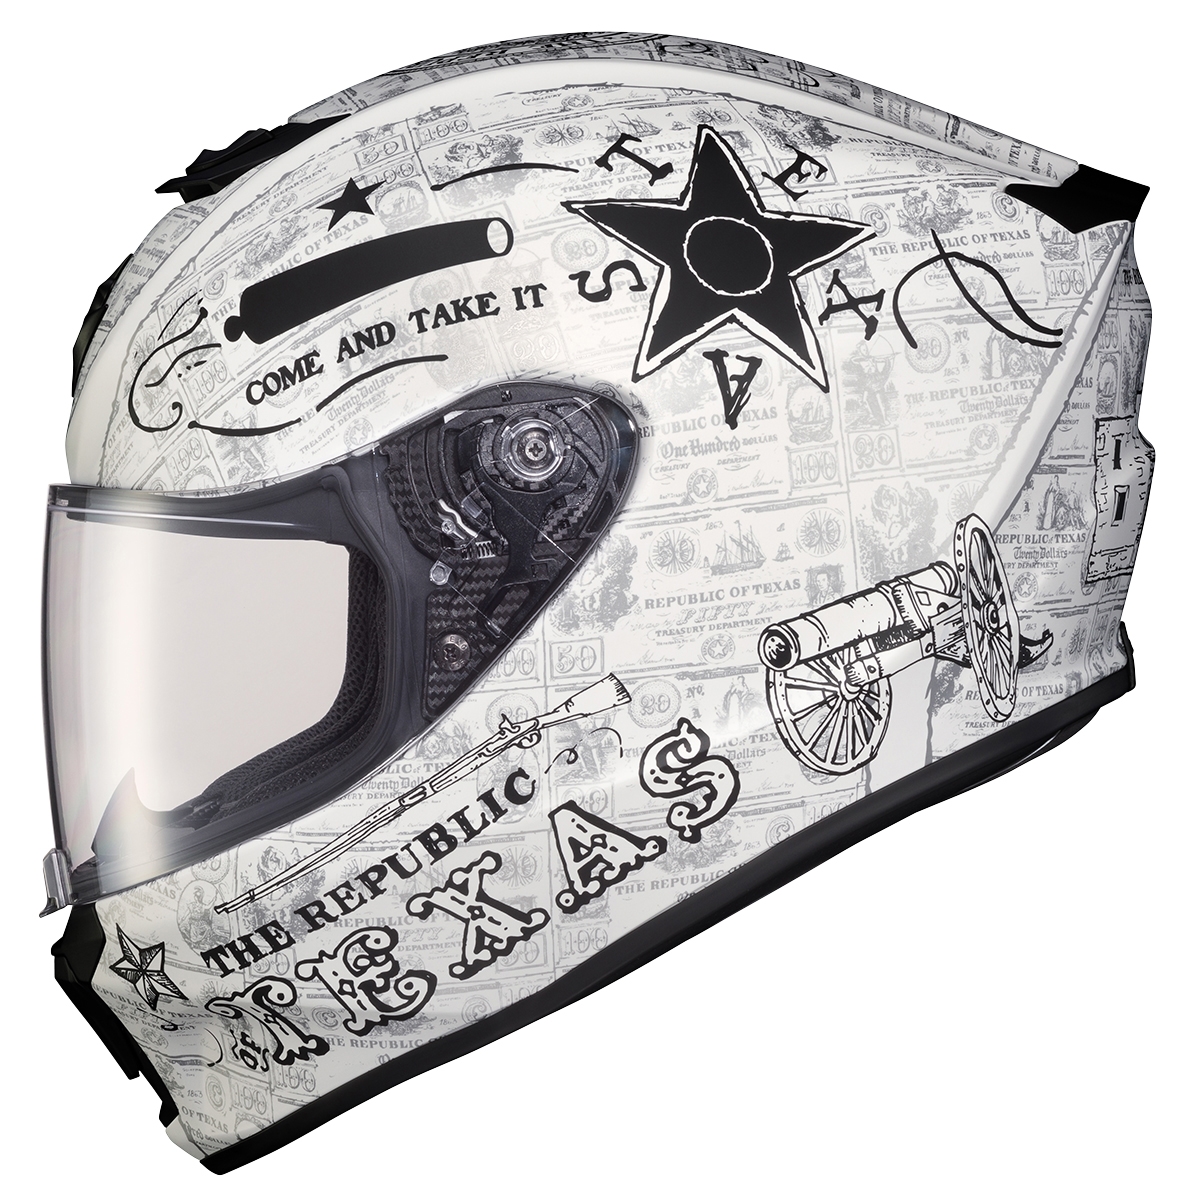 Scorpion Exo Exo-R420 Full-Face Helmet Lone Star White